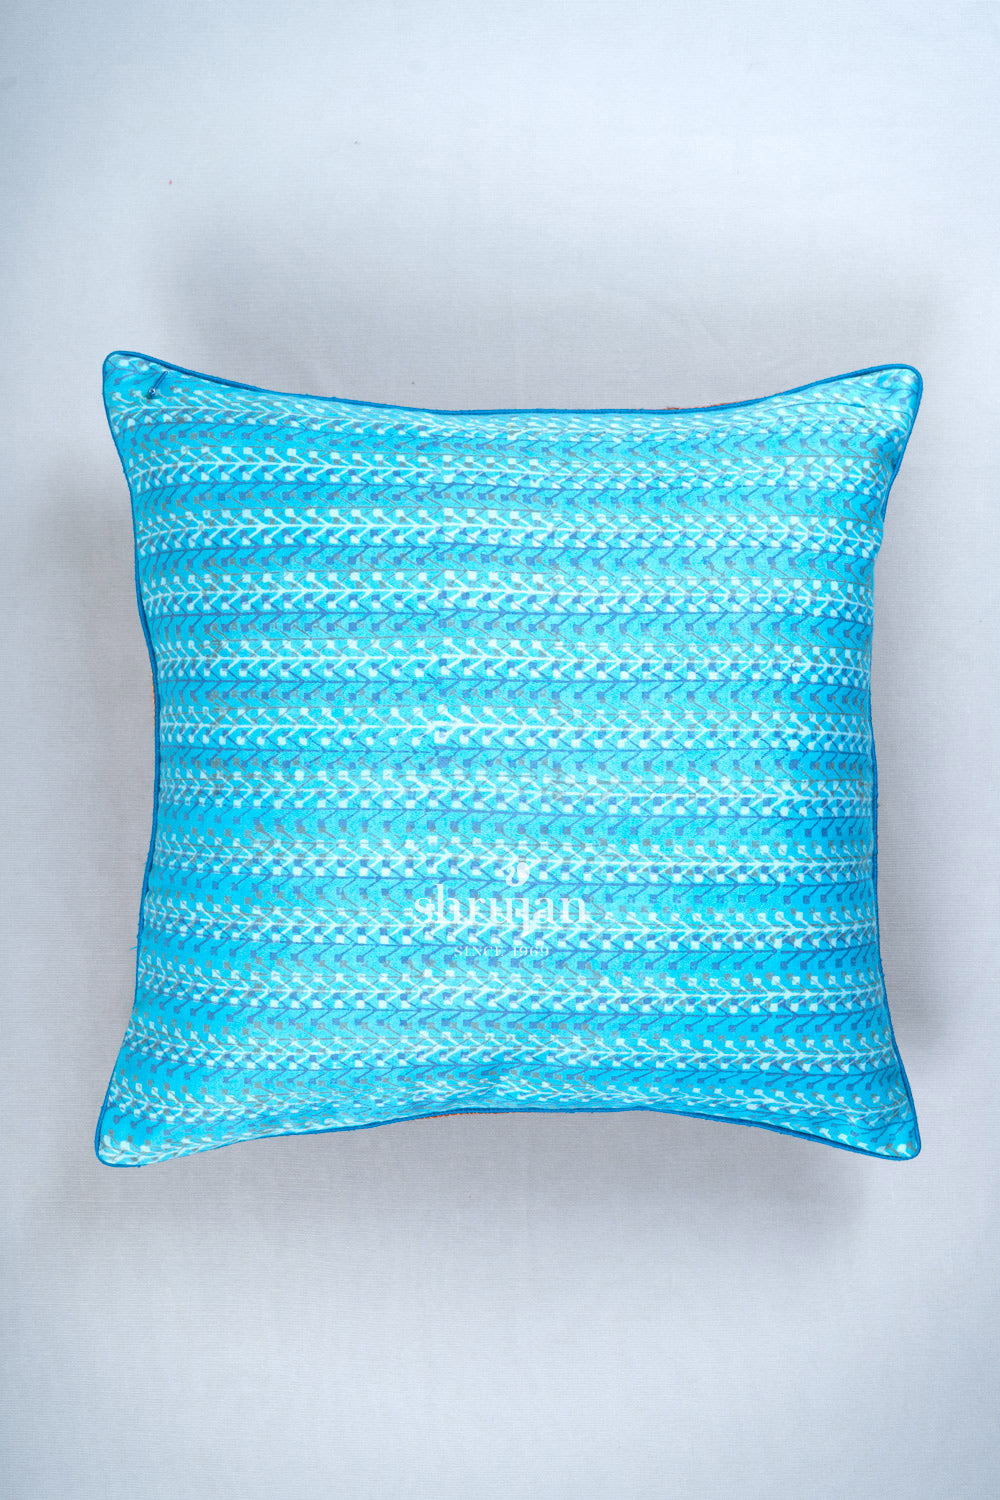 Cotton and Silk Jat Garasiya Hand Embroidered Cushion Cover